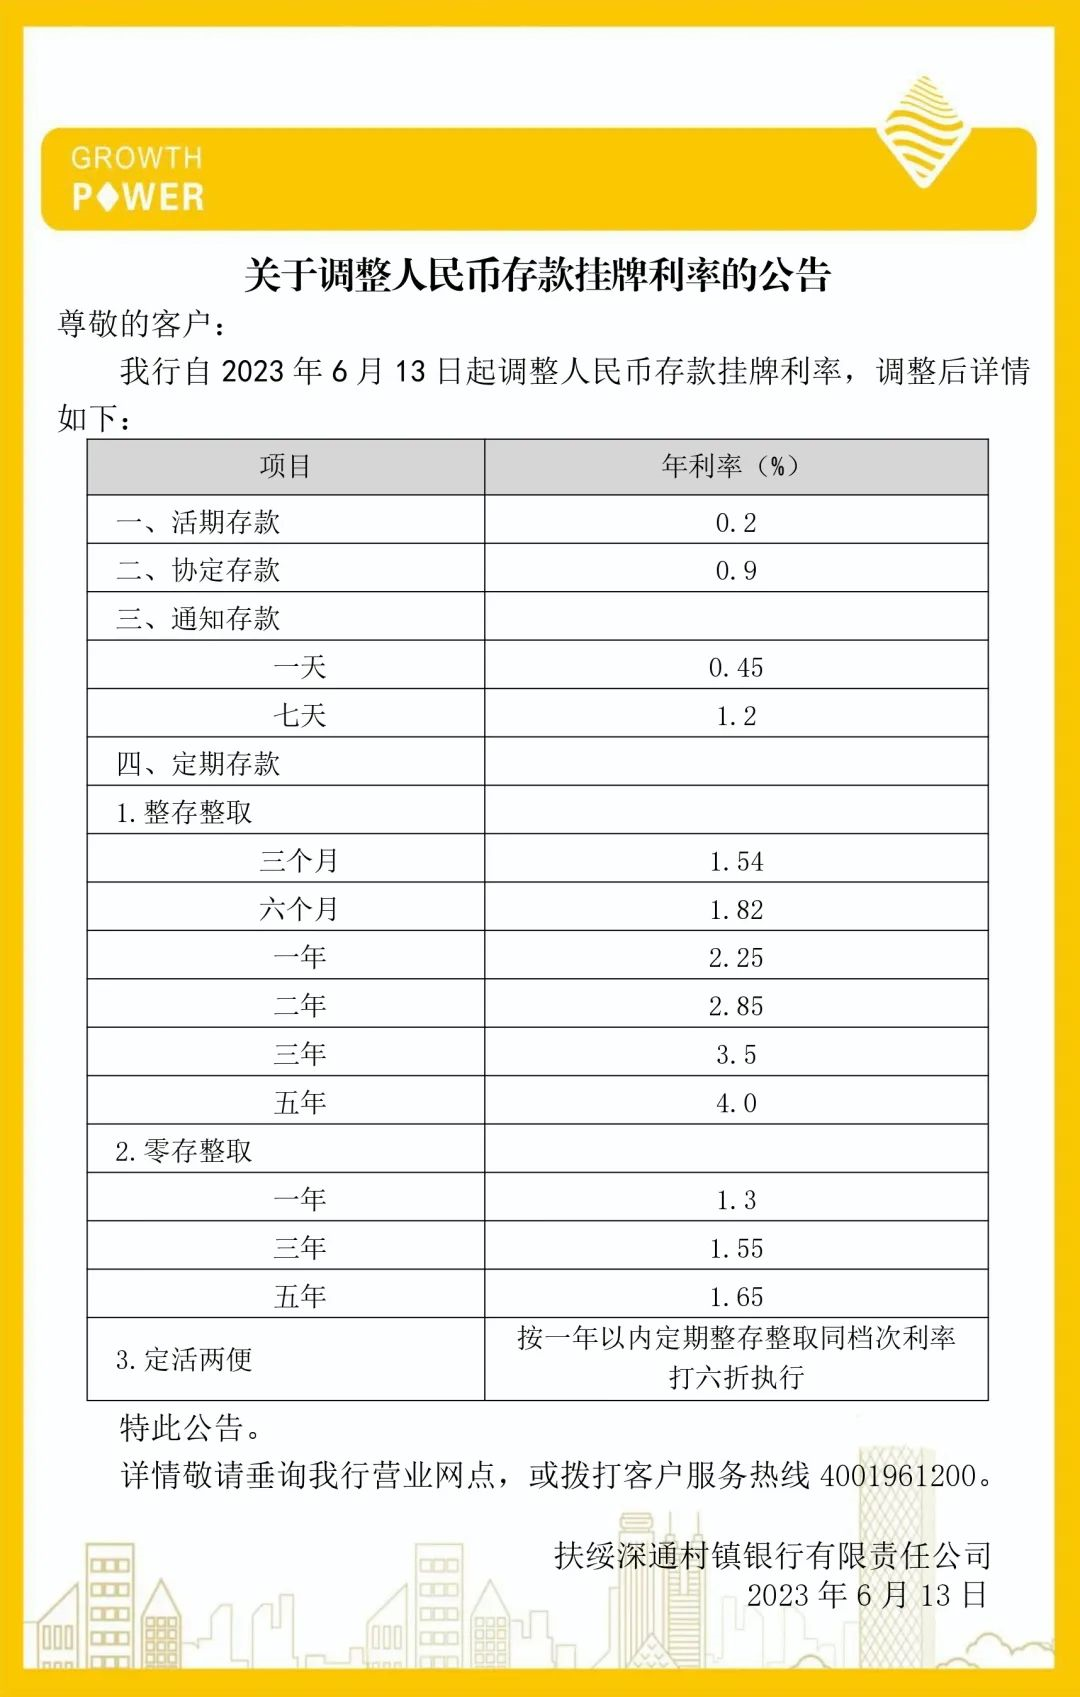 五年定期存款利率_江苏银行五年定期利率_鞍山银行五年定期利率是多少